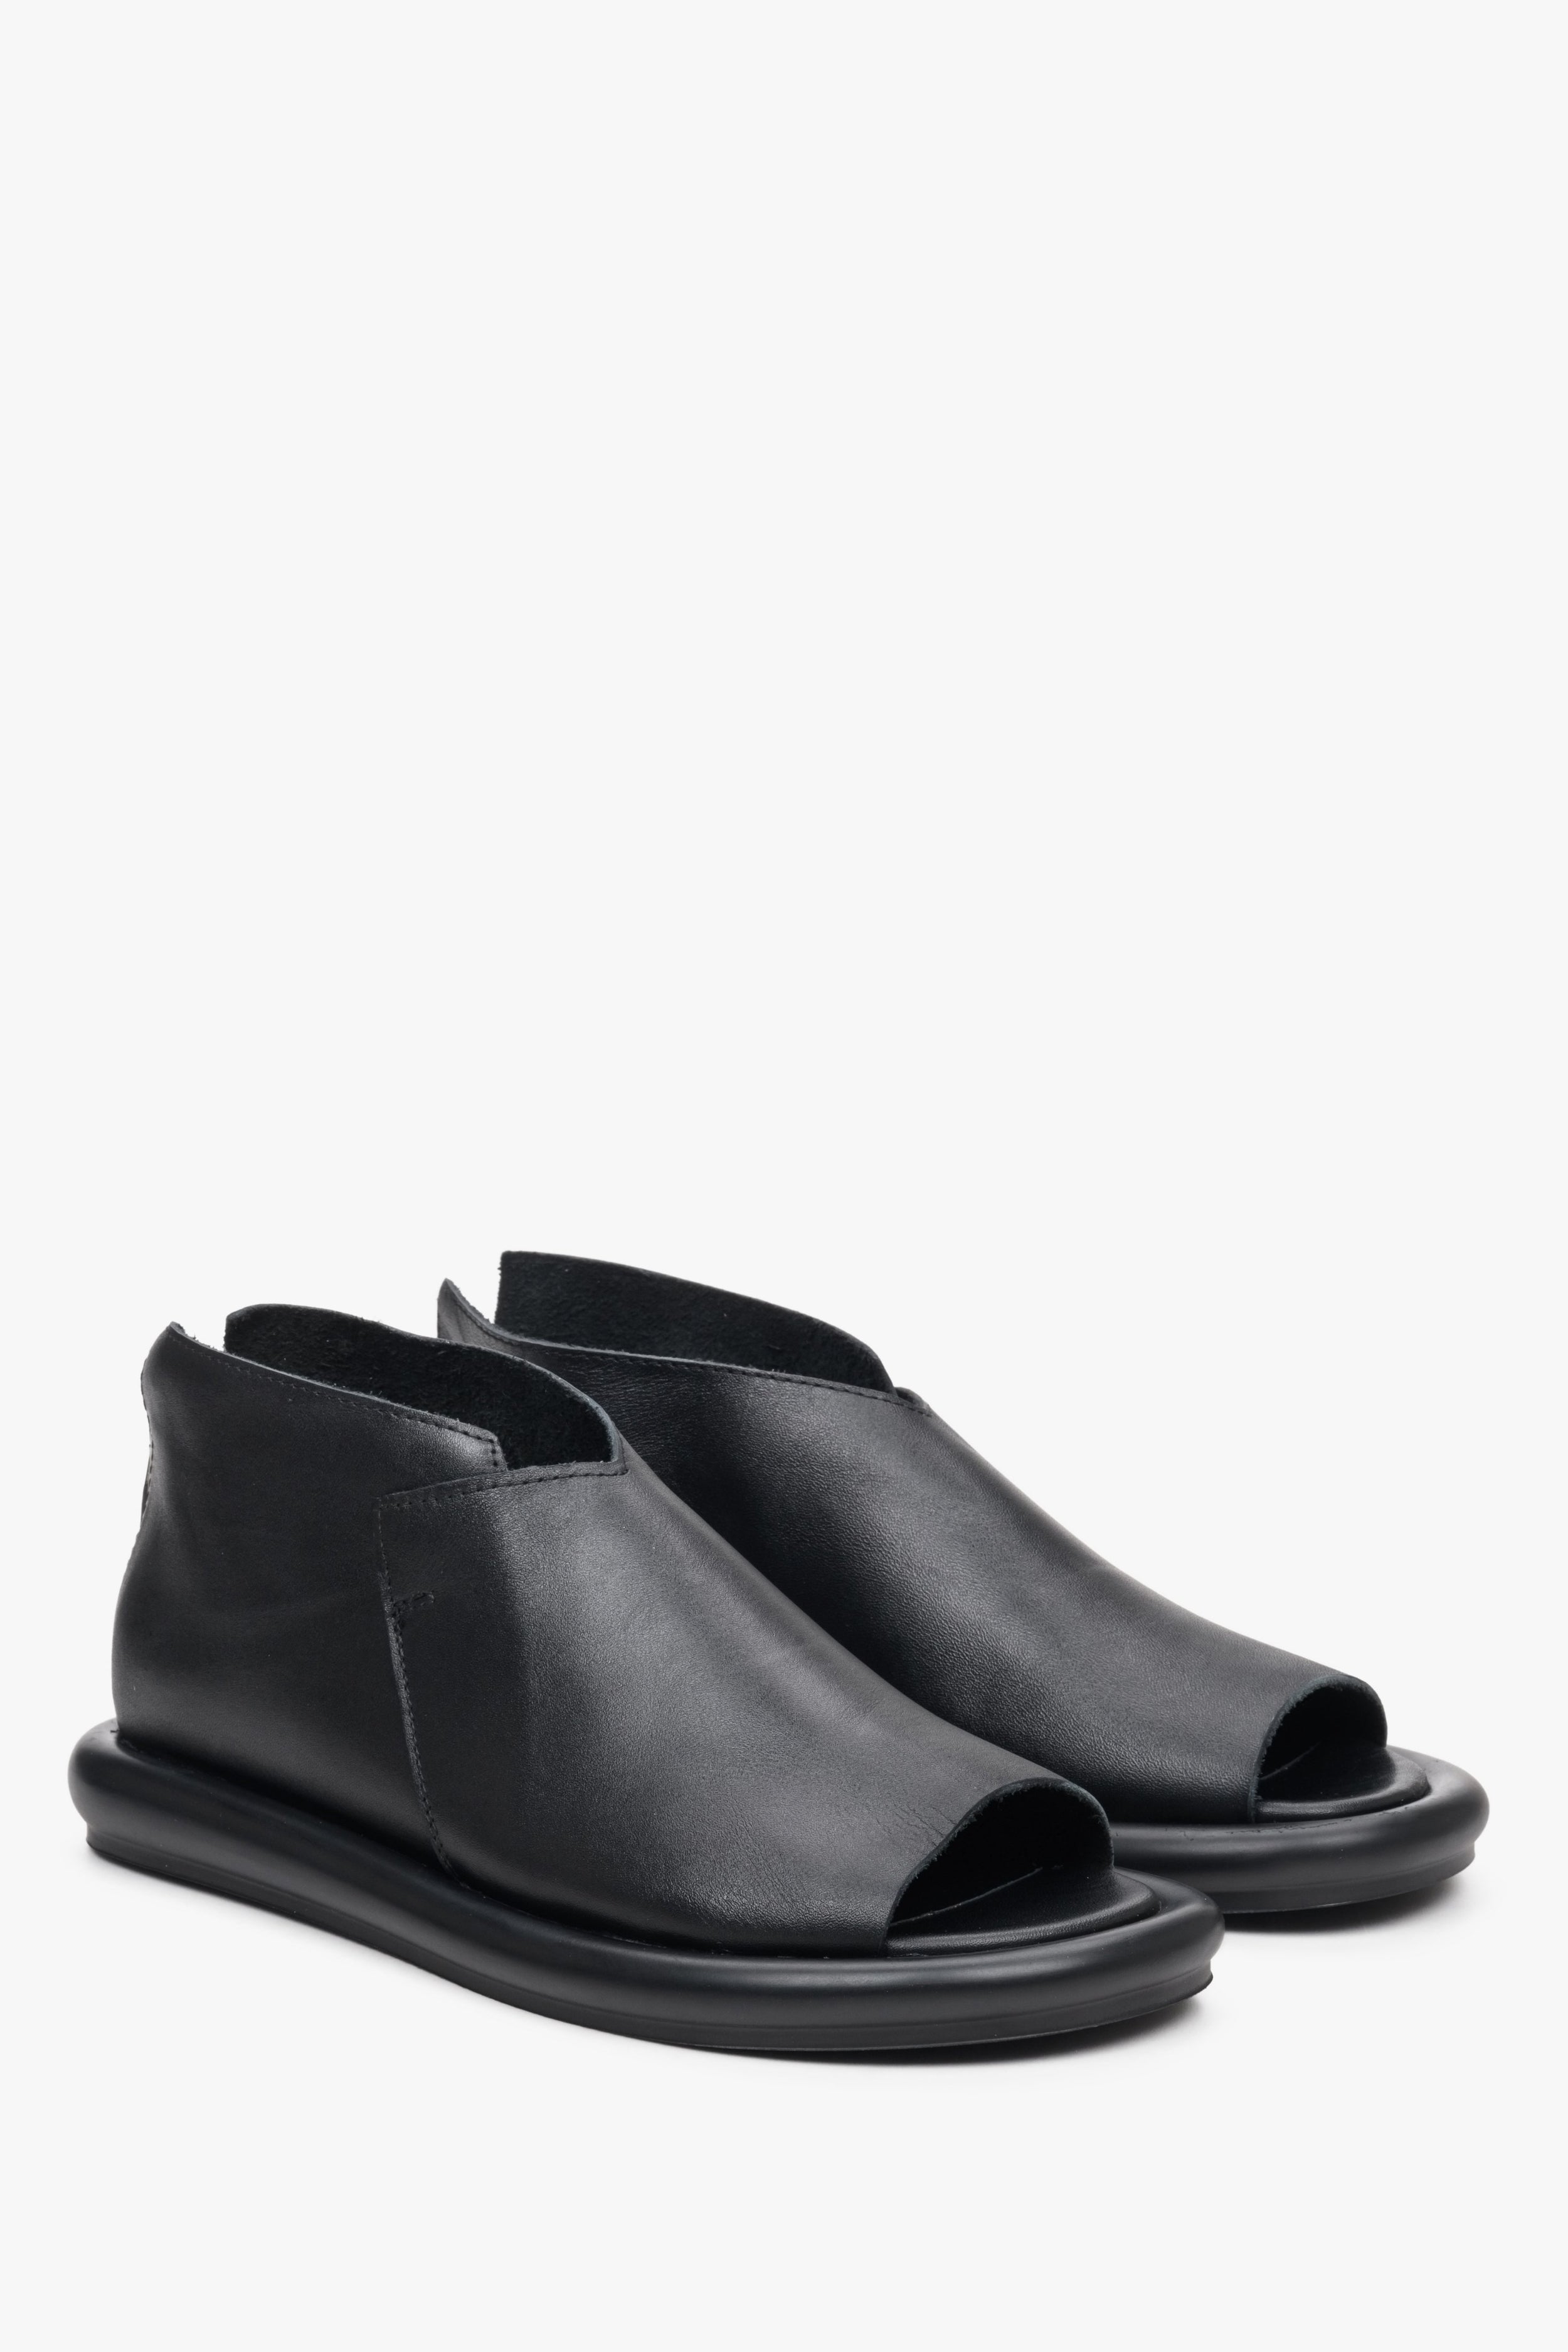 Estro: Czarne skórzane sandały damskie z zakrytą piętą